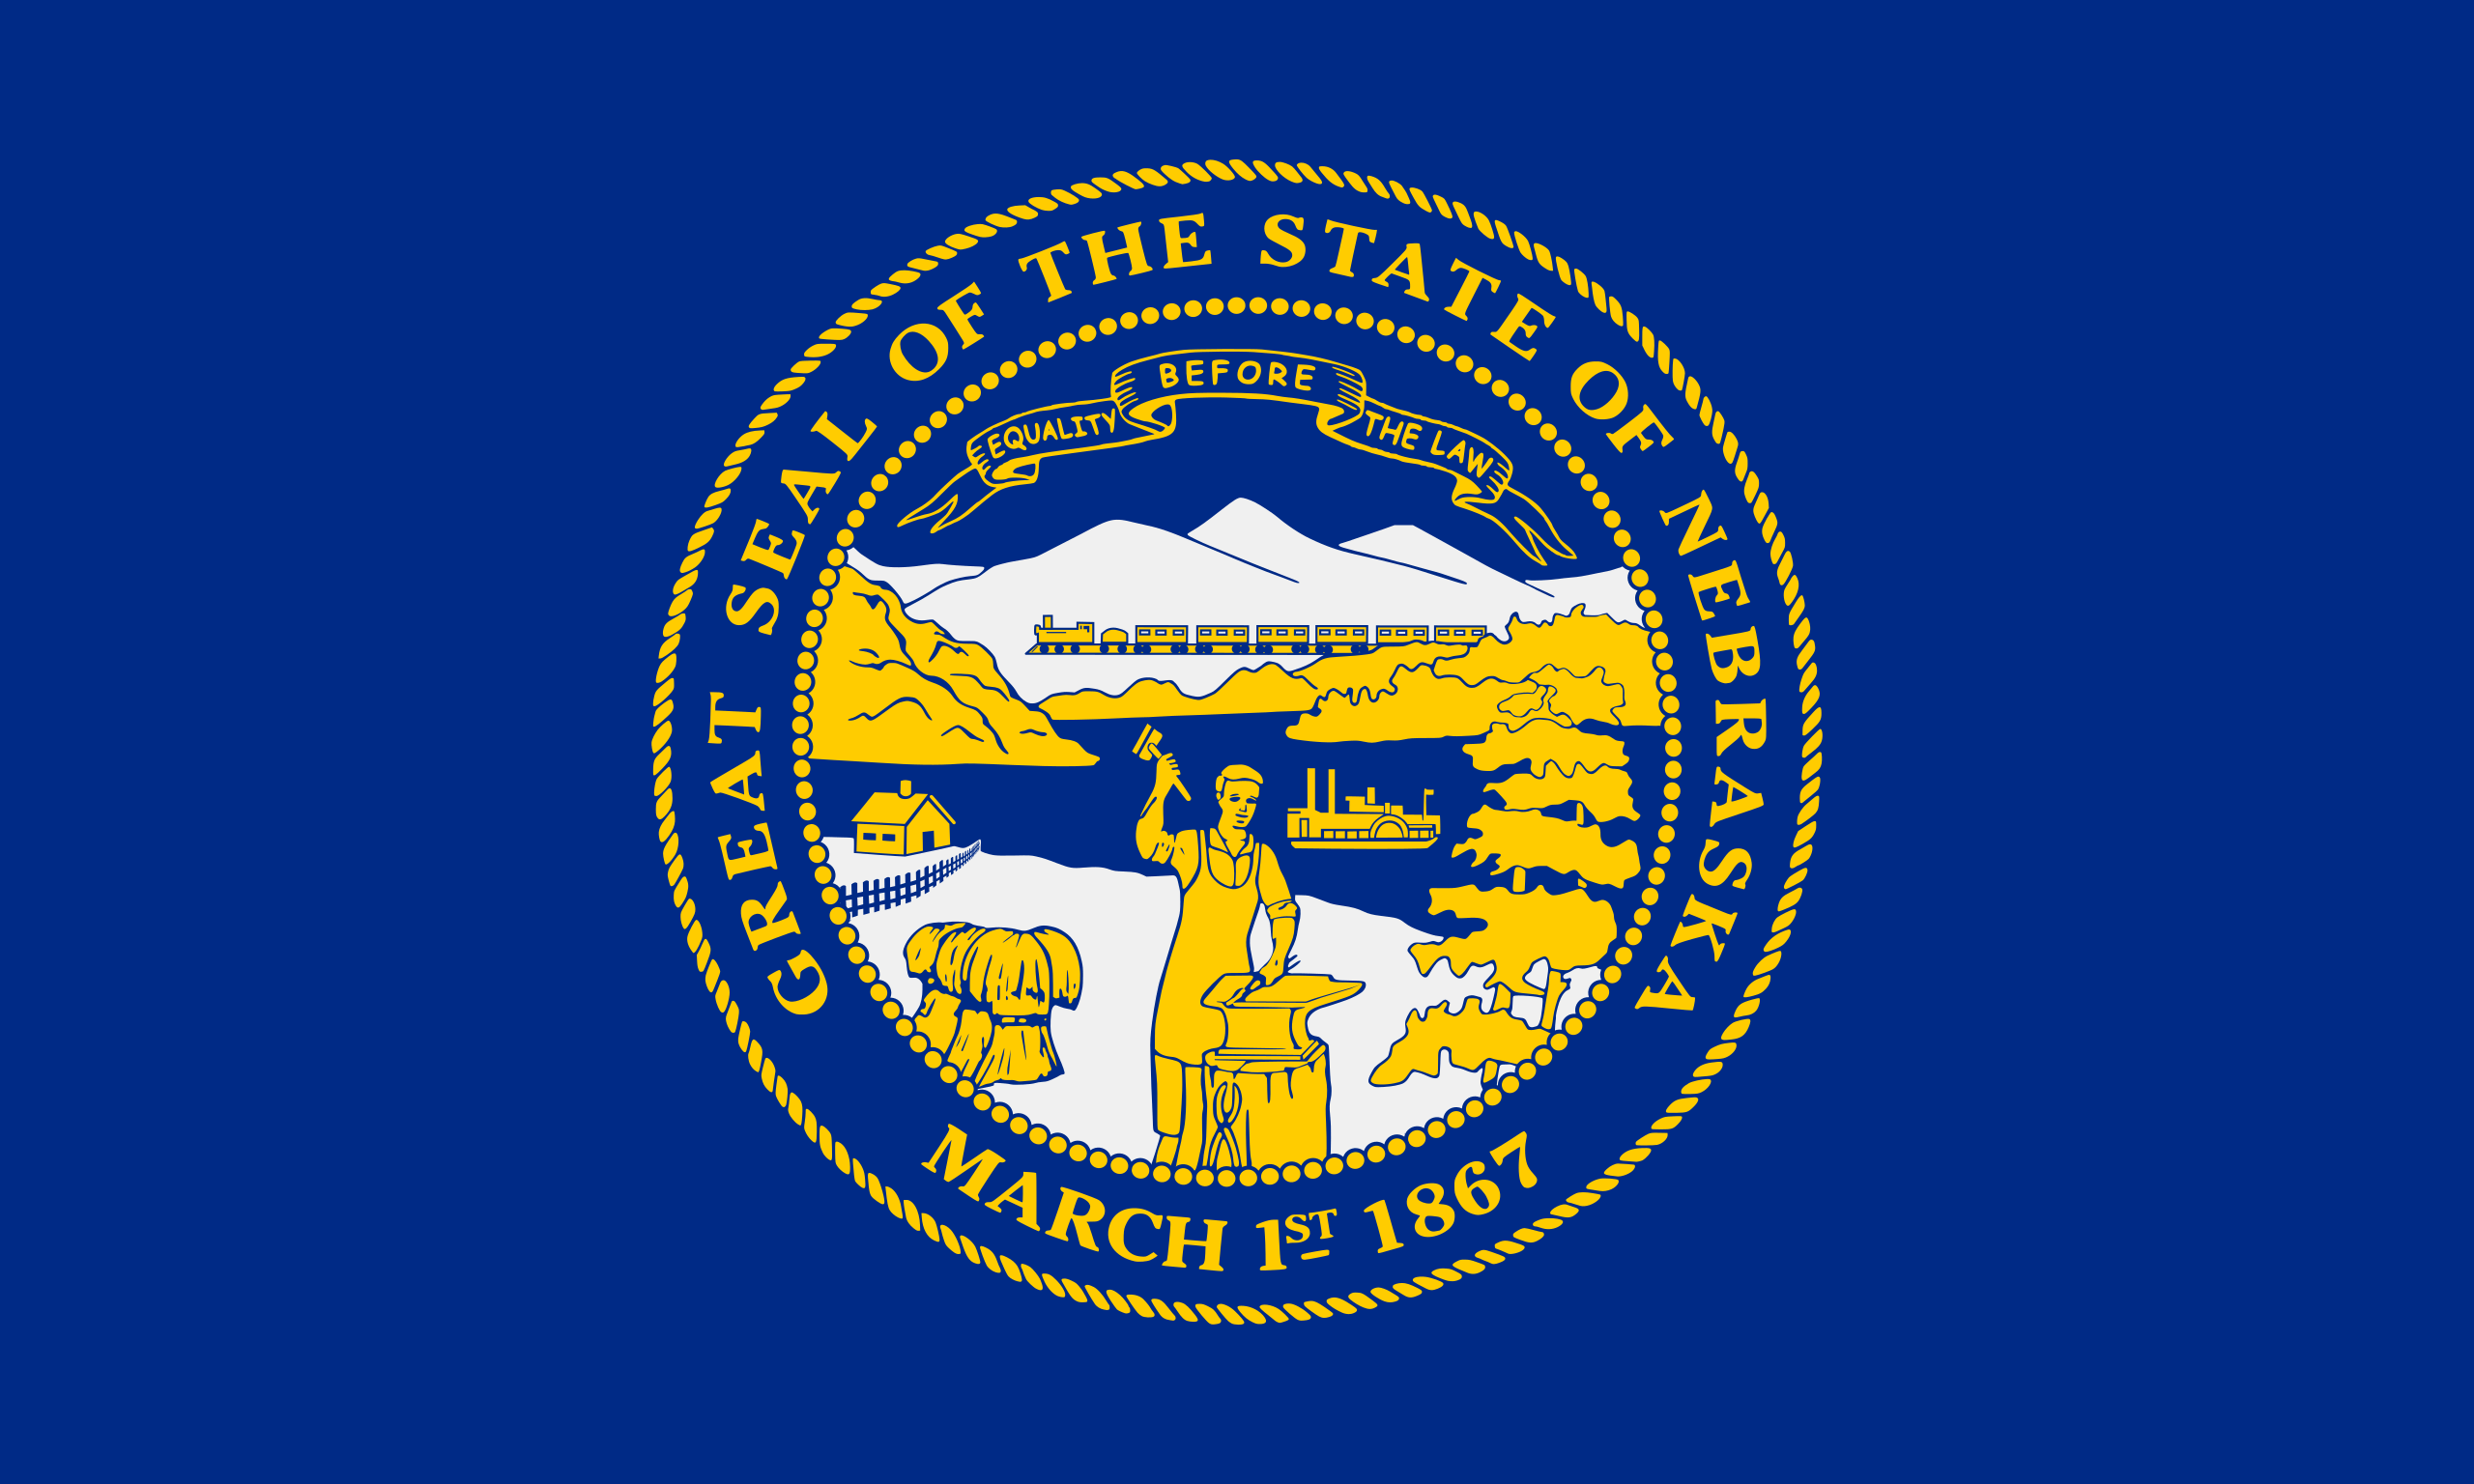 the Nebraska state flag